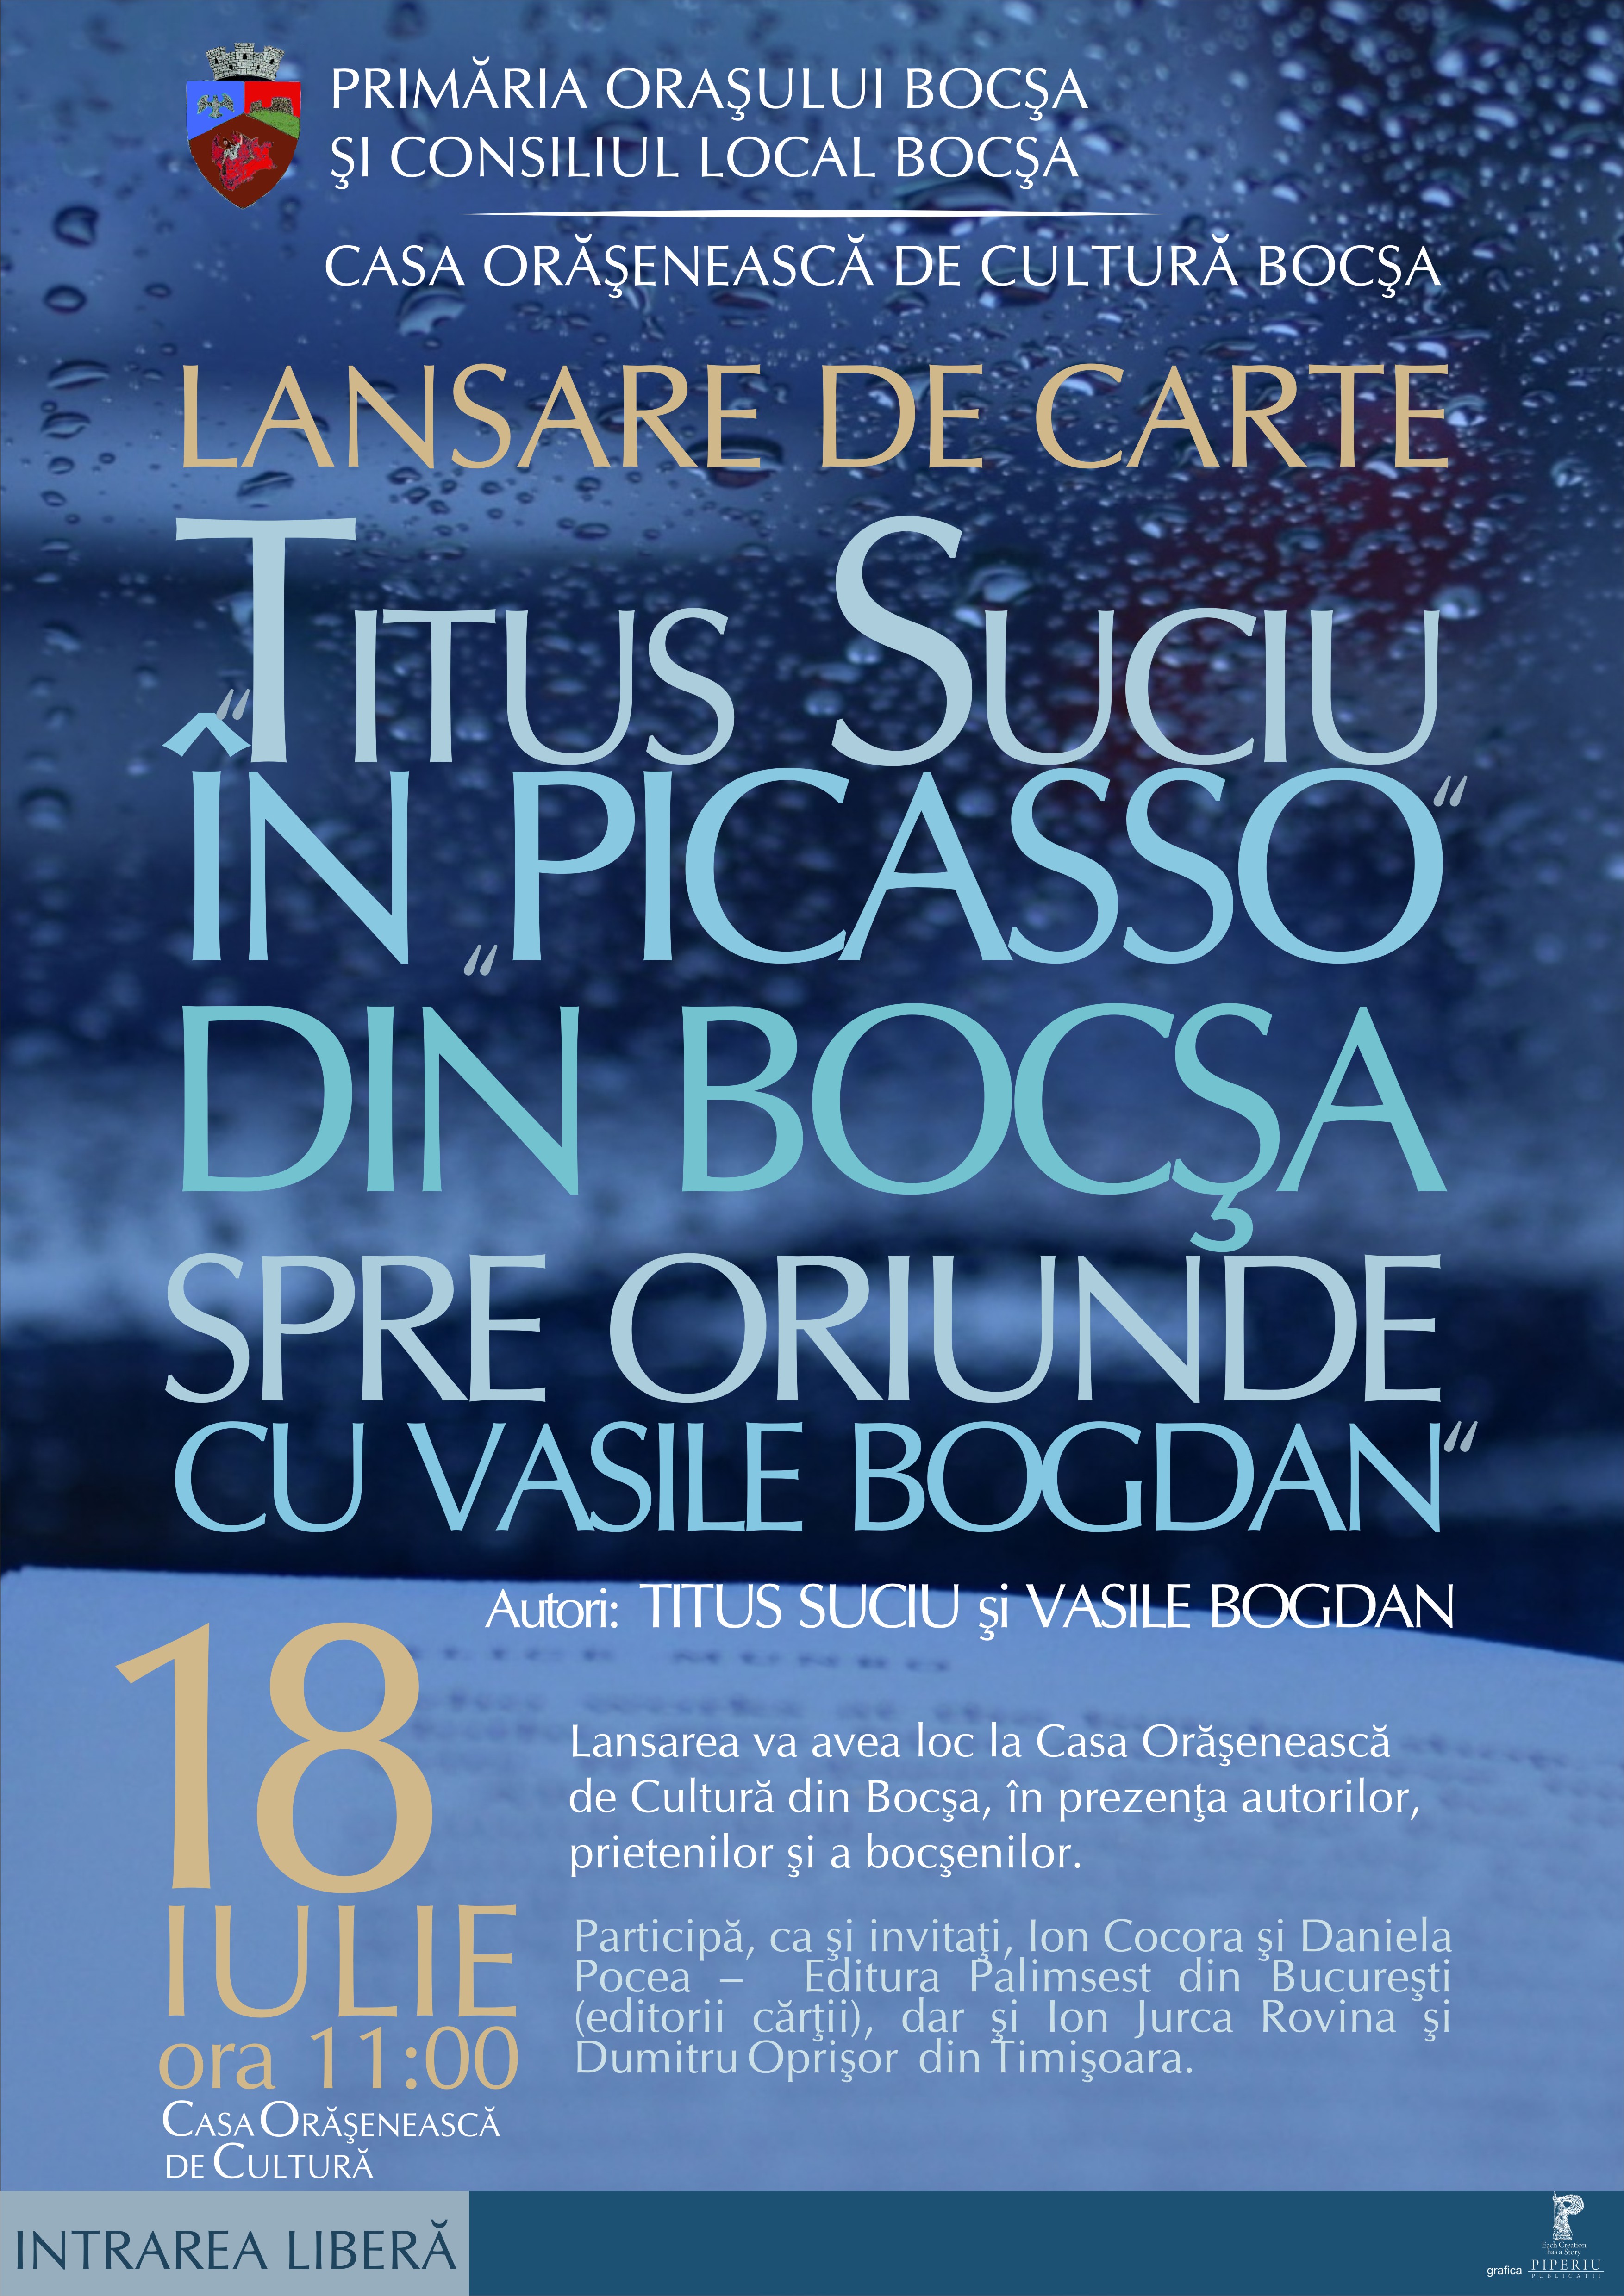 Seară de cultură, seară de înălțare sufletească – Titus Suciu  În „Picasso” din Bocșa spre oriunde cu Vasile Bogdan